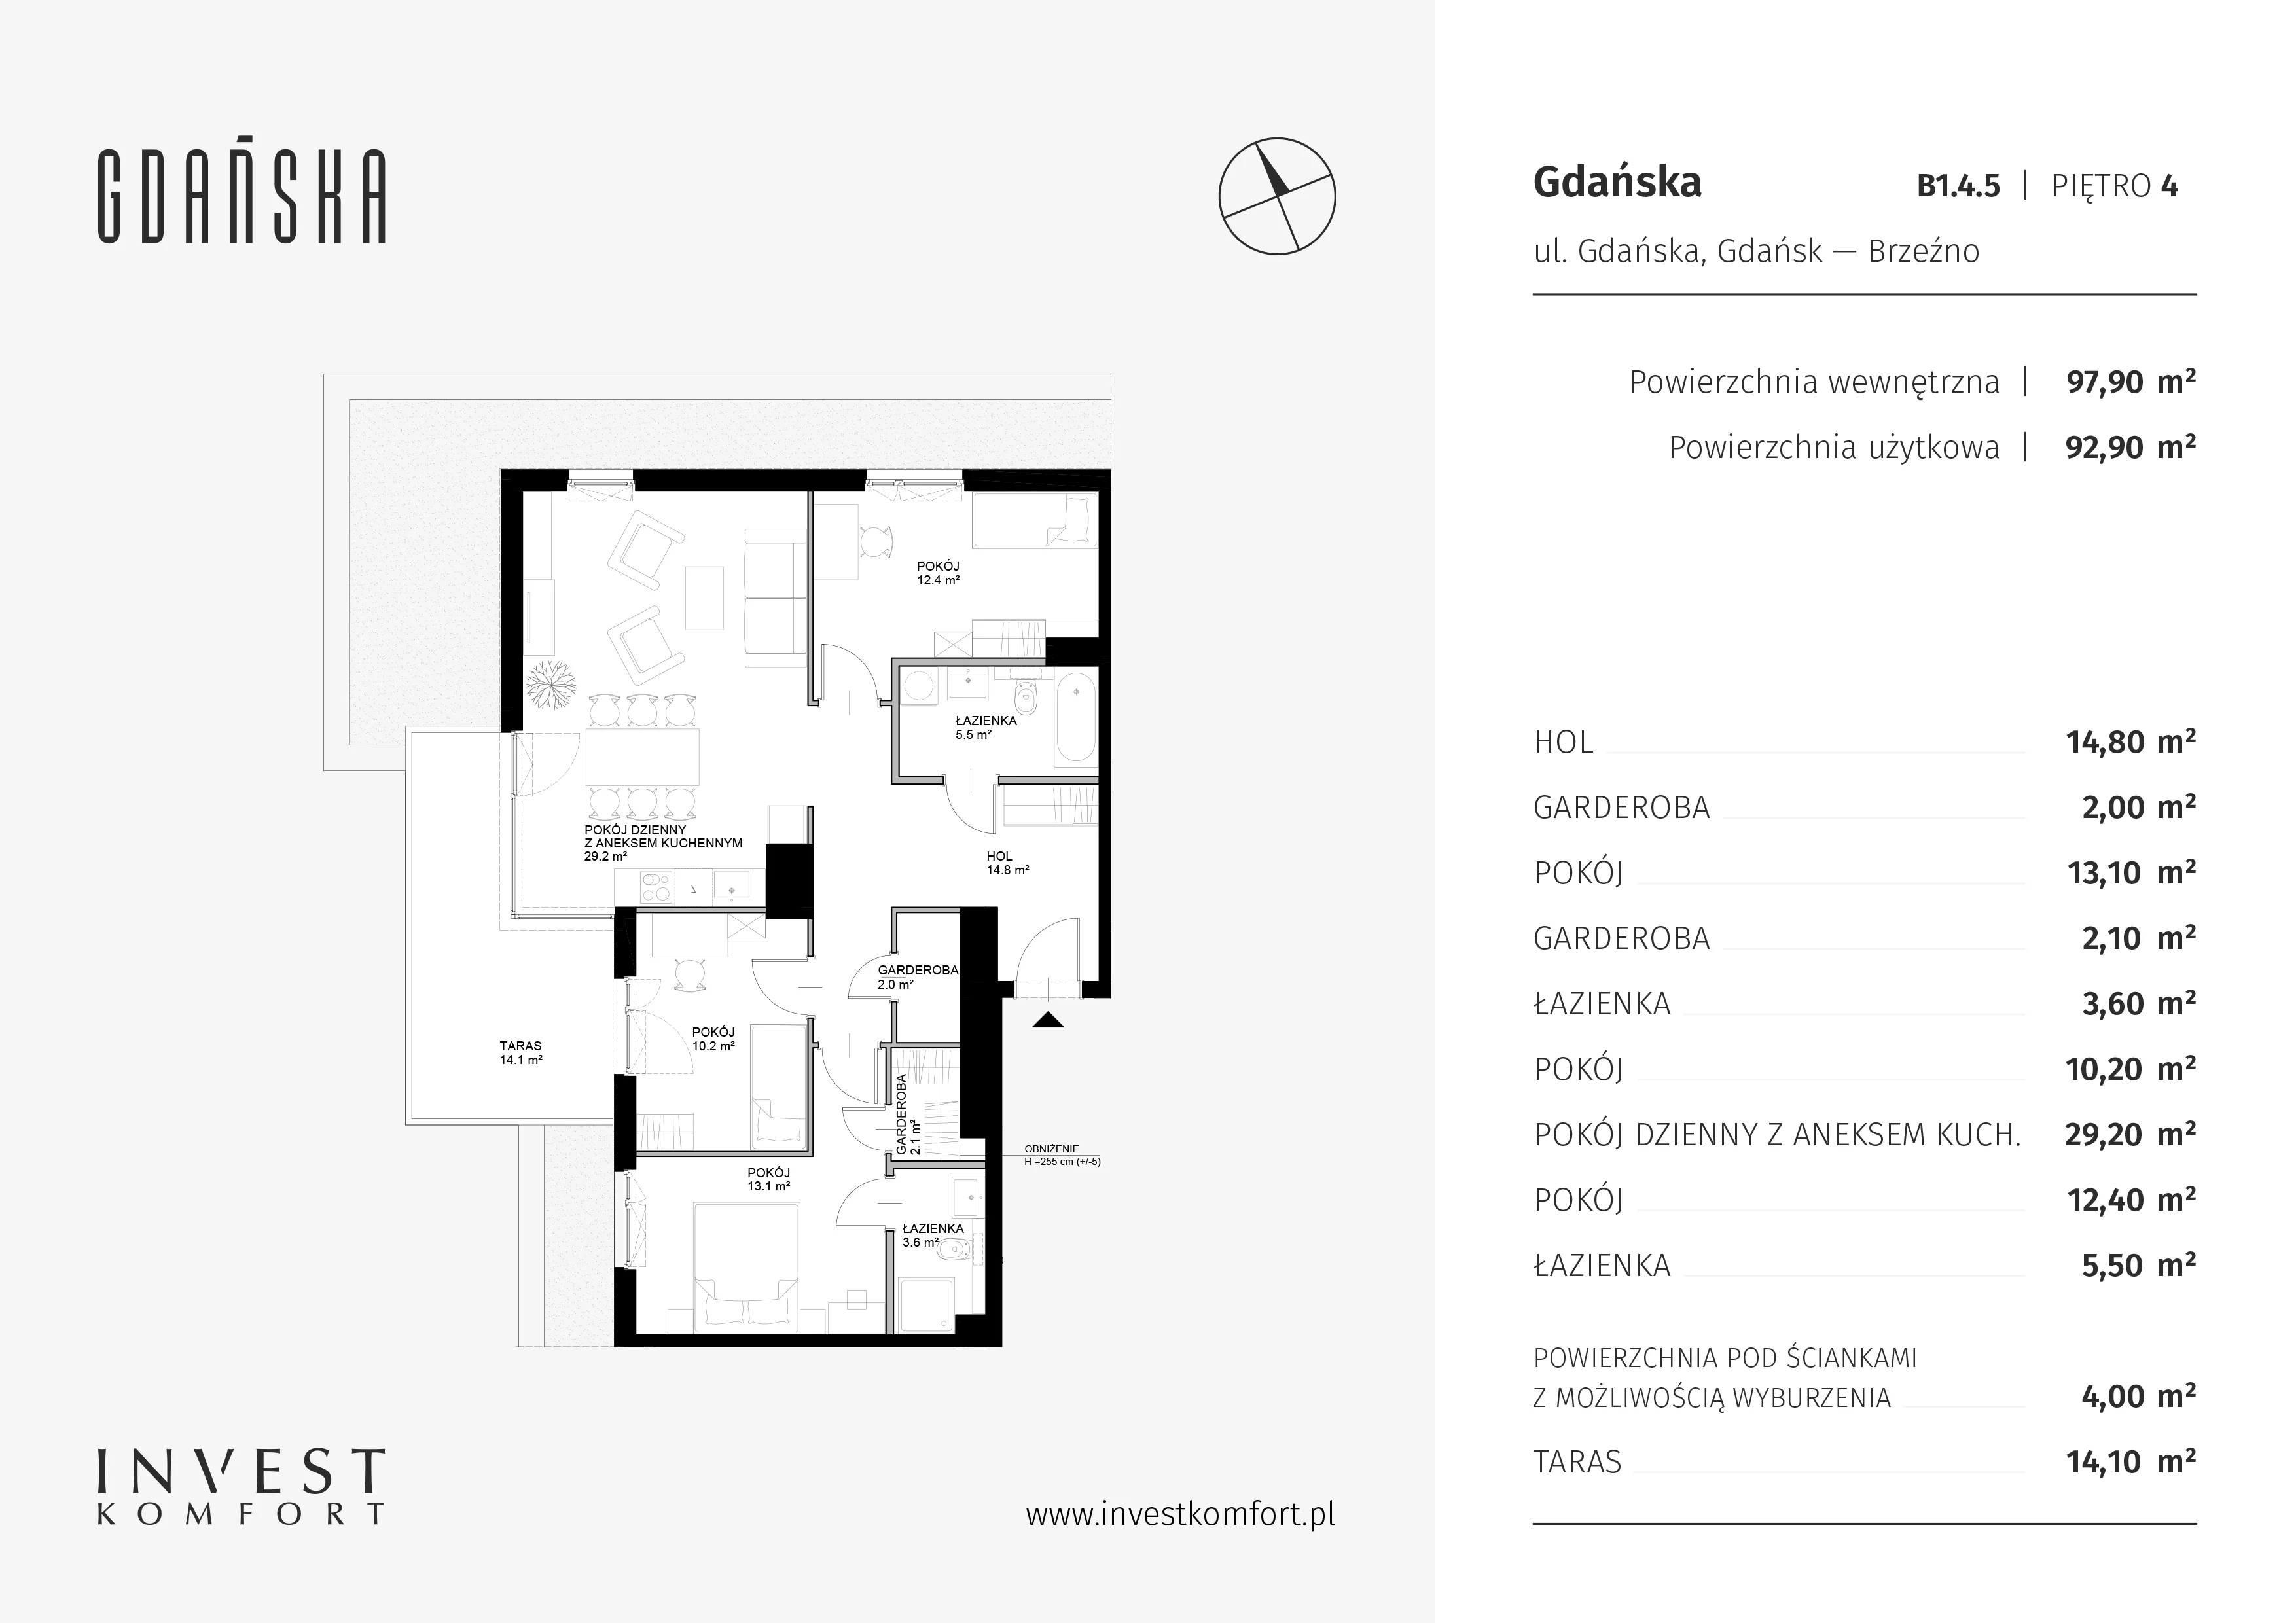 Mieszkanie 97,90 m², piętro 4, oferta nr B1.4.5, Gdańska, Gdańsk, Brzeźno, ul. Gdańska